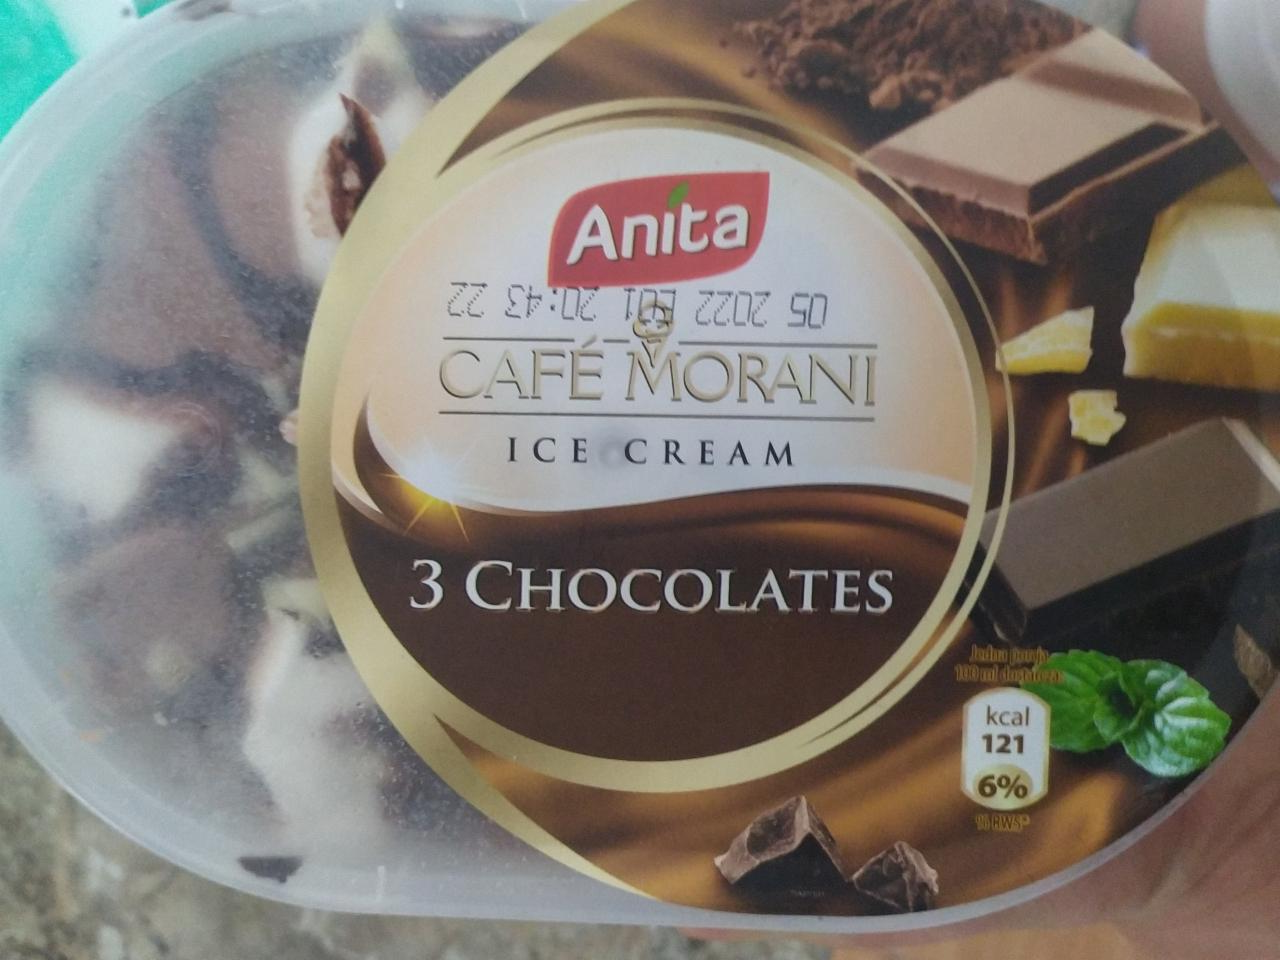 Fotografie - café morani ice cream 3 chocolates